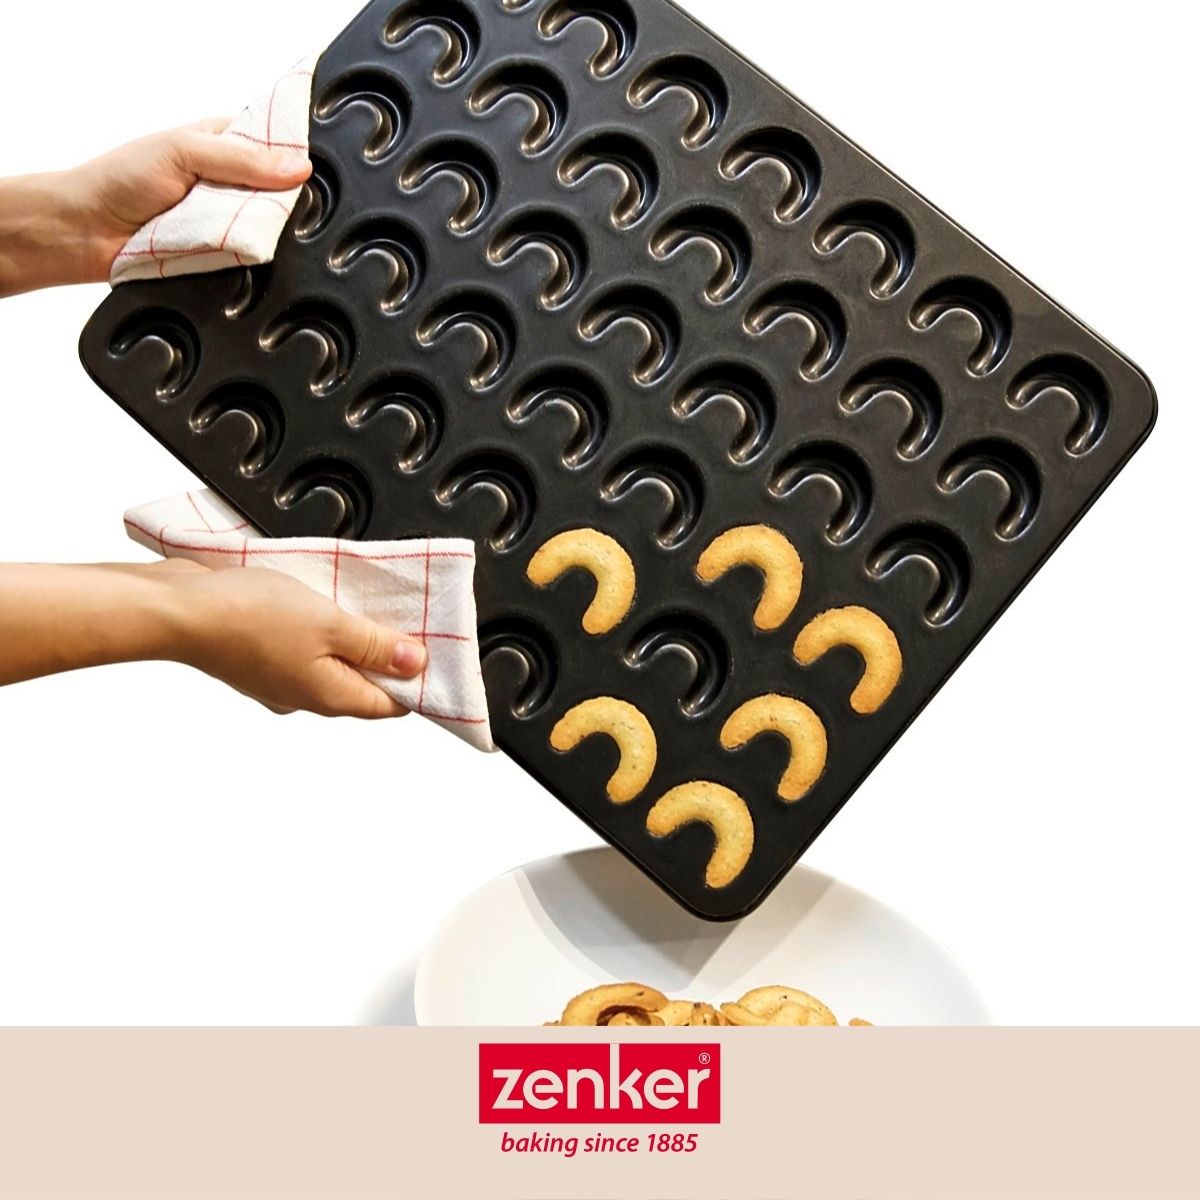 Moule pour vanille kipferl croissant vanille 42 x 32 cm Zenker Special Creative